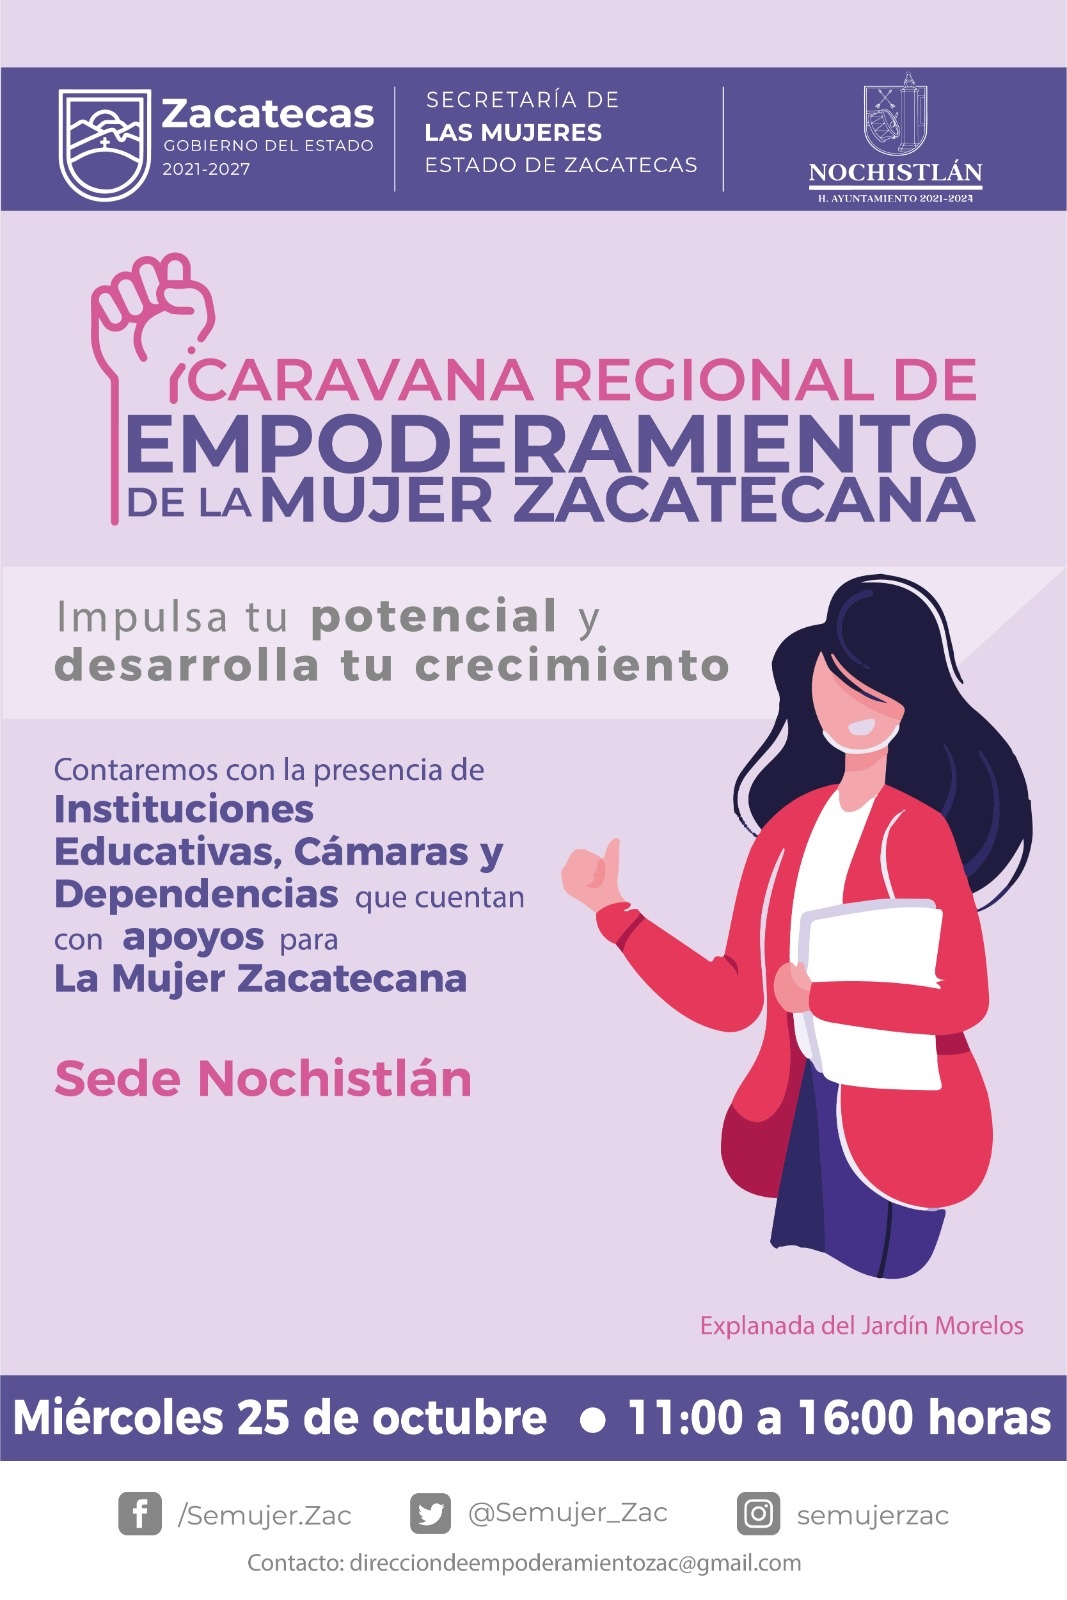 Caravana Regional de Empoderamiento de la Mujer Zacatecana